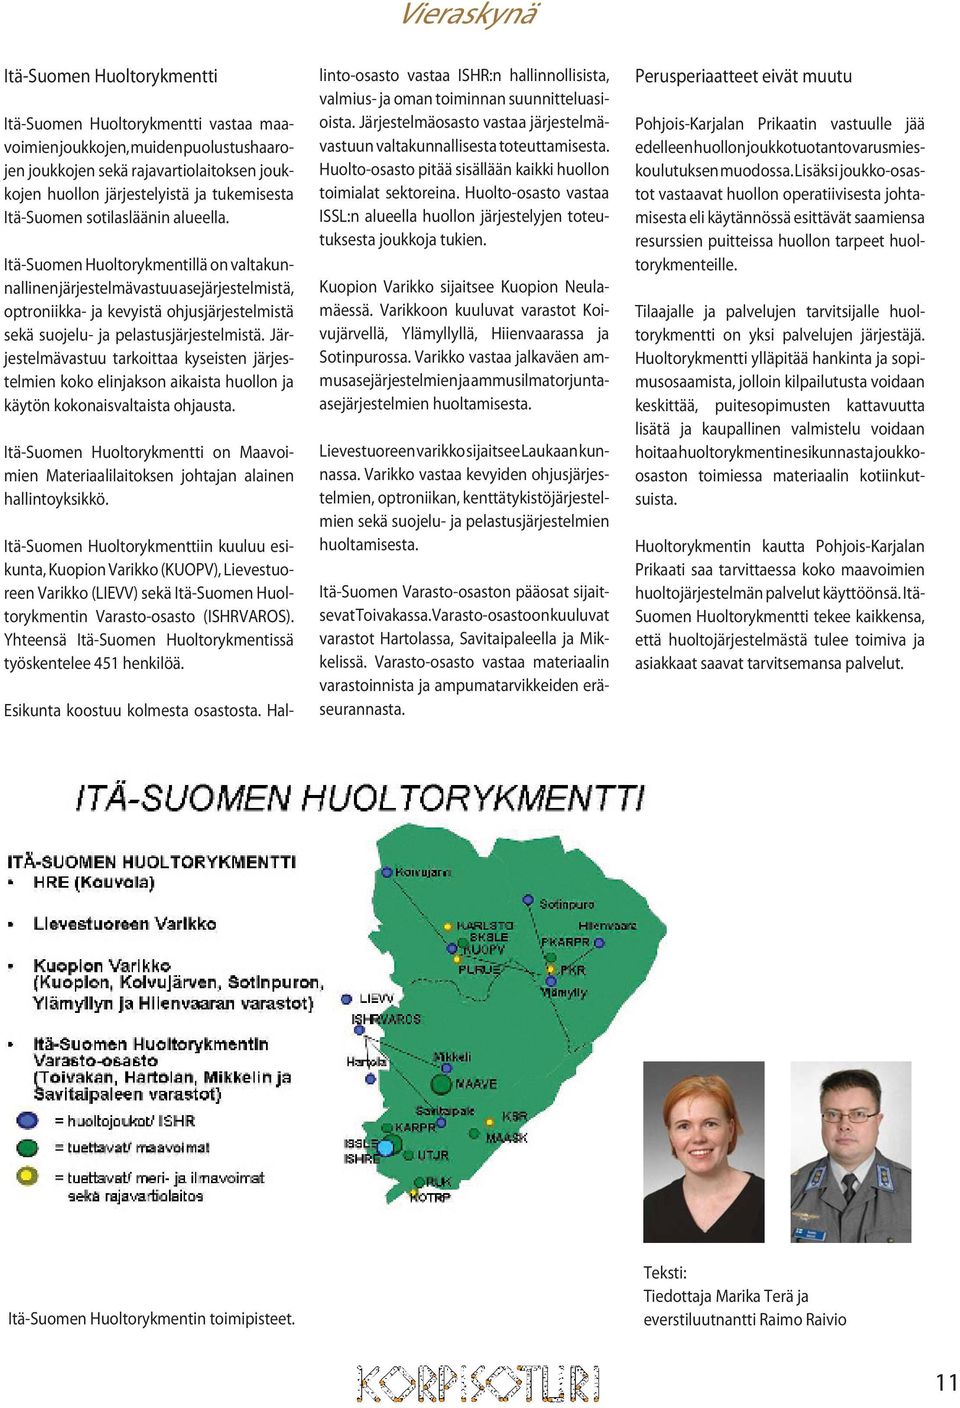 Itä-Suomen Huoltorykmentillä on valtakunnallinen järjestelmävastuu asejärjestelmistä, optroniikka- ja kevyistä ohjusjärjestelmistä sekä suojelu- ja pelastusjärjestelmistä.